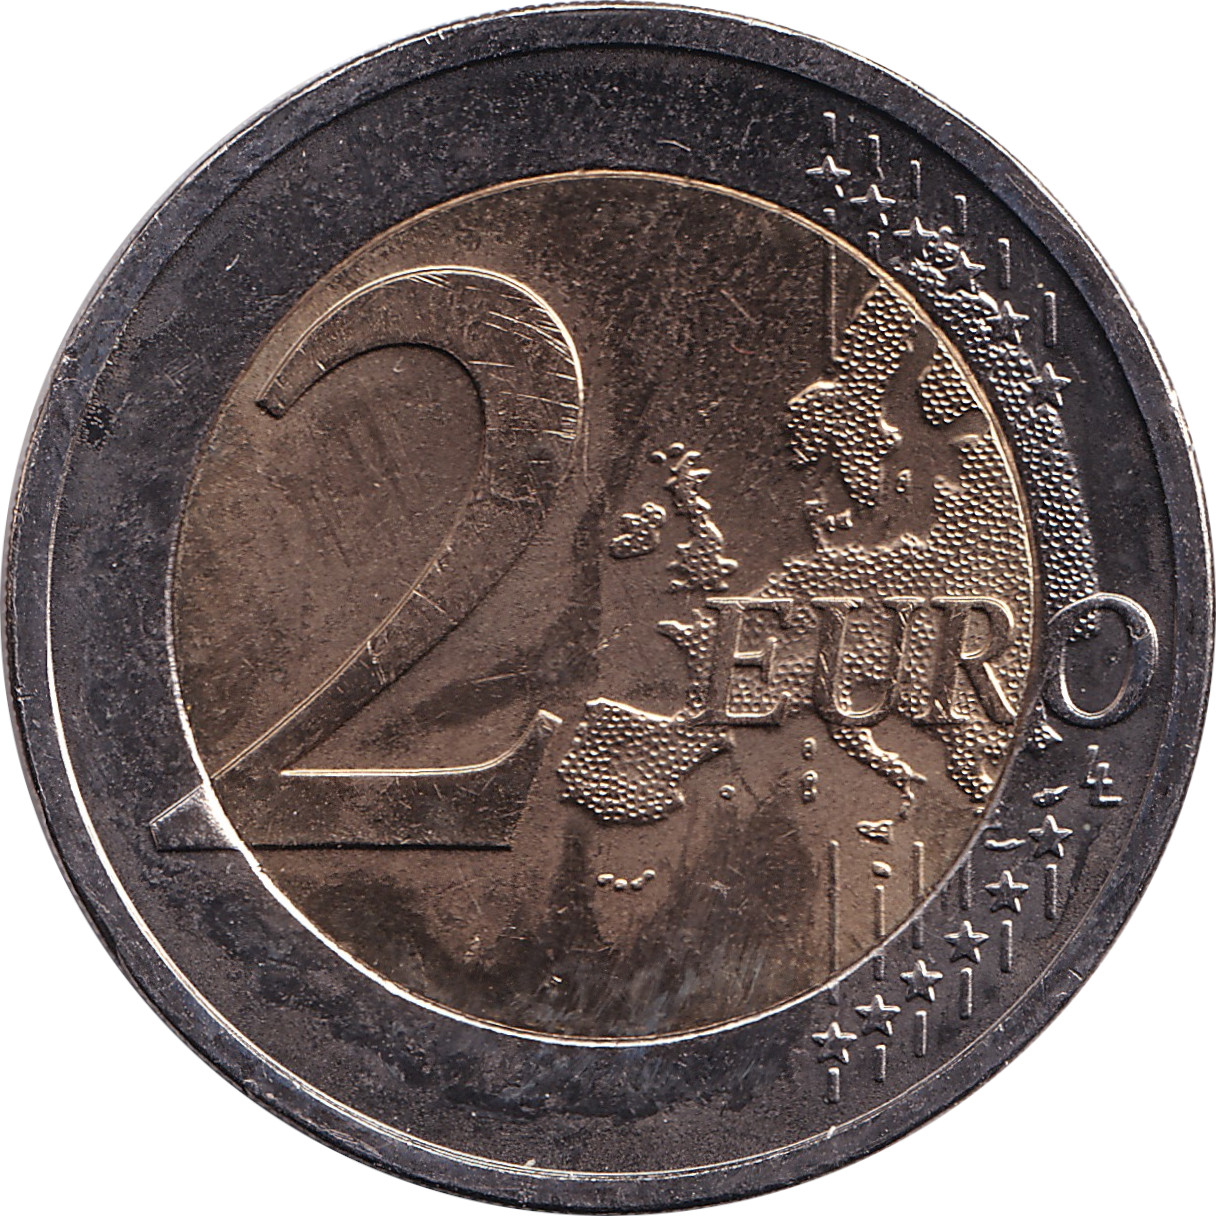 2 euro - Drapeau européen - Chypre